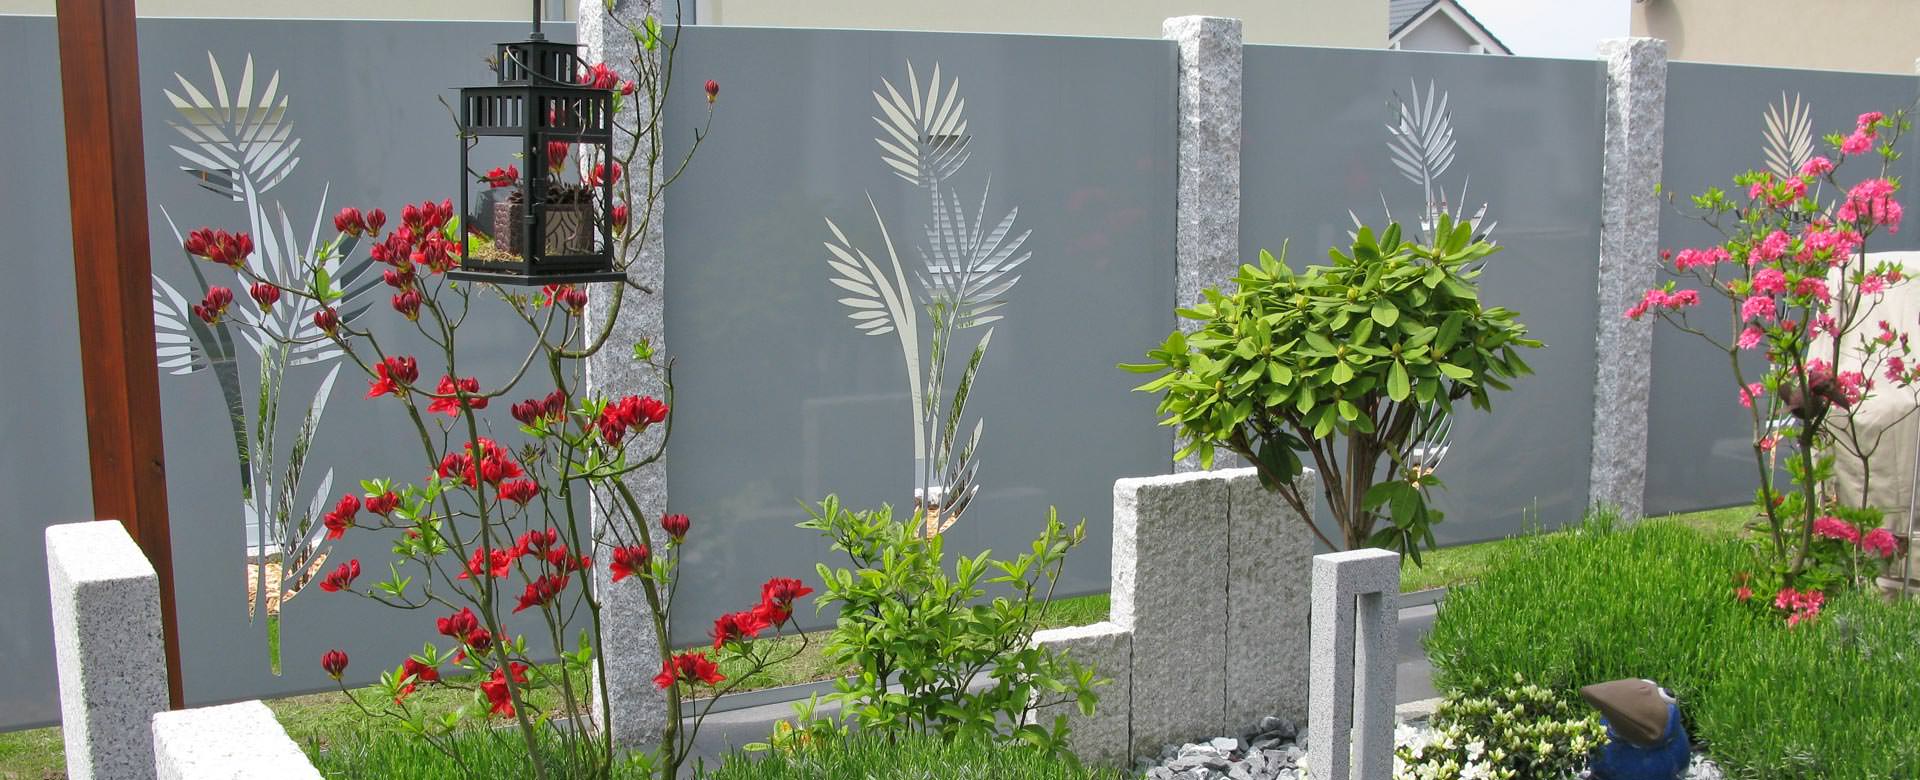 Rostelemente Garten Luxus Sichtschutz Aus Metall Ganz Individuell Tiko Metalldesign